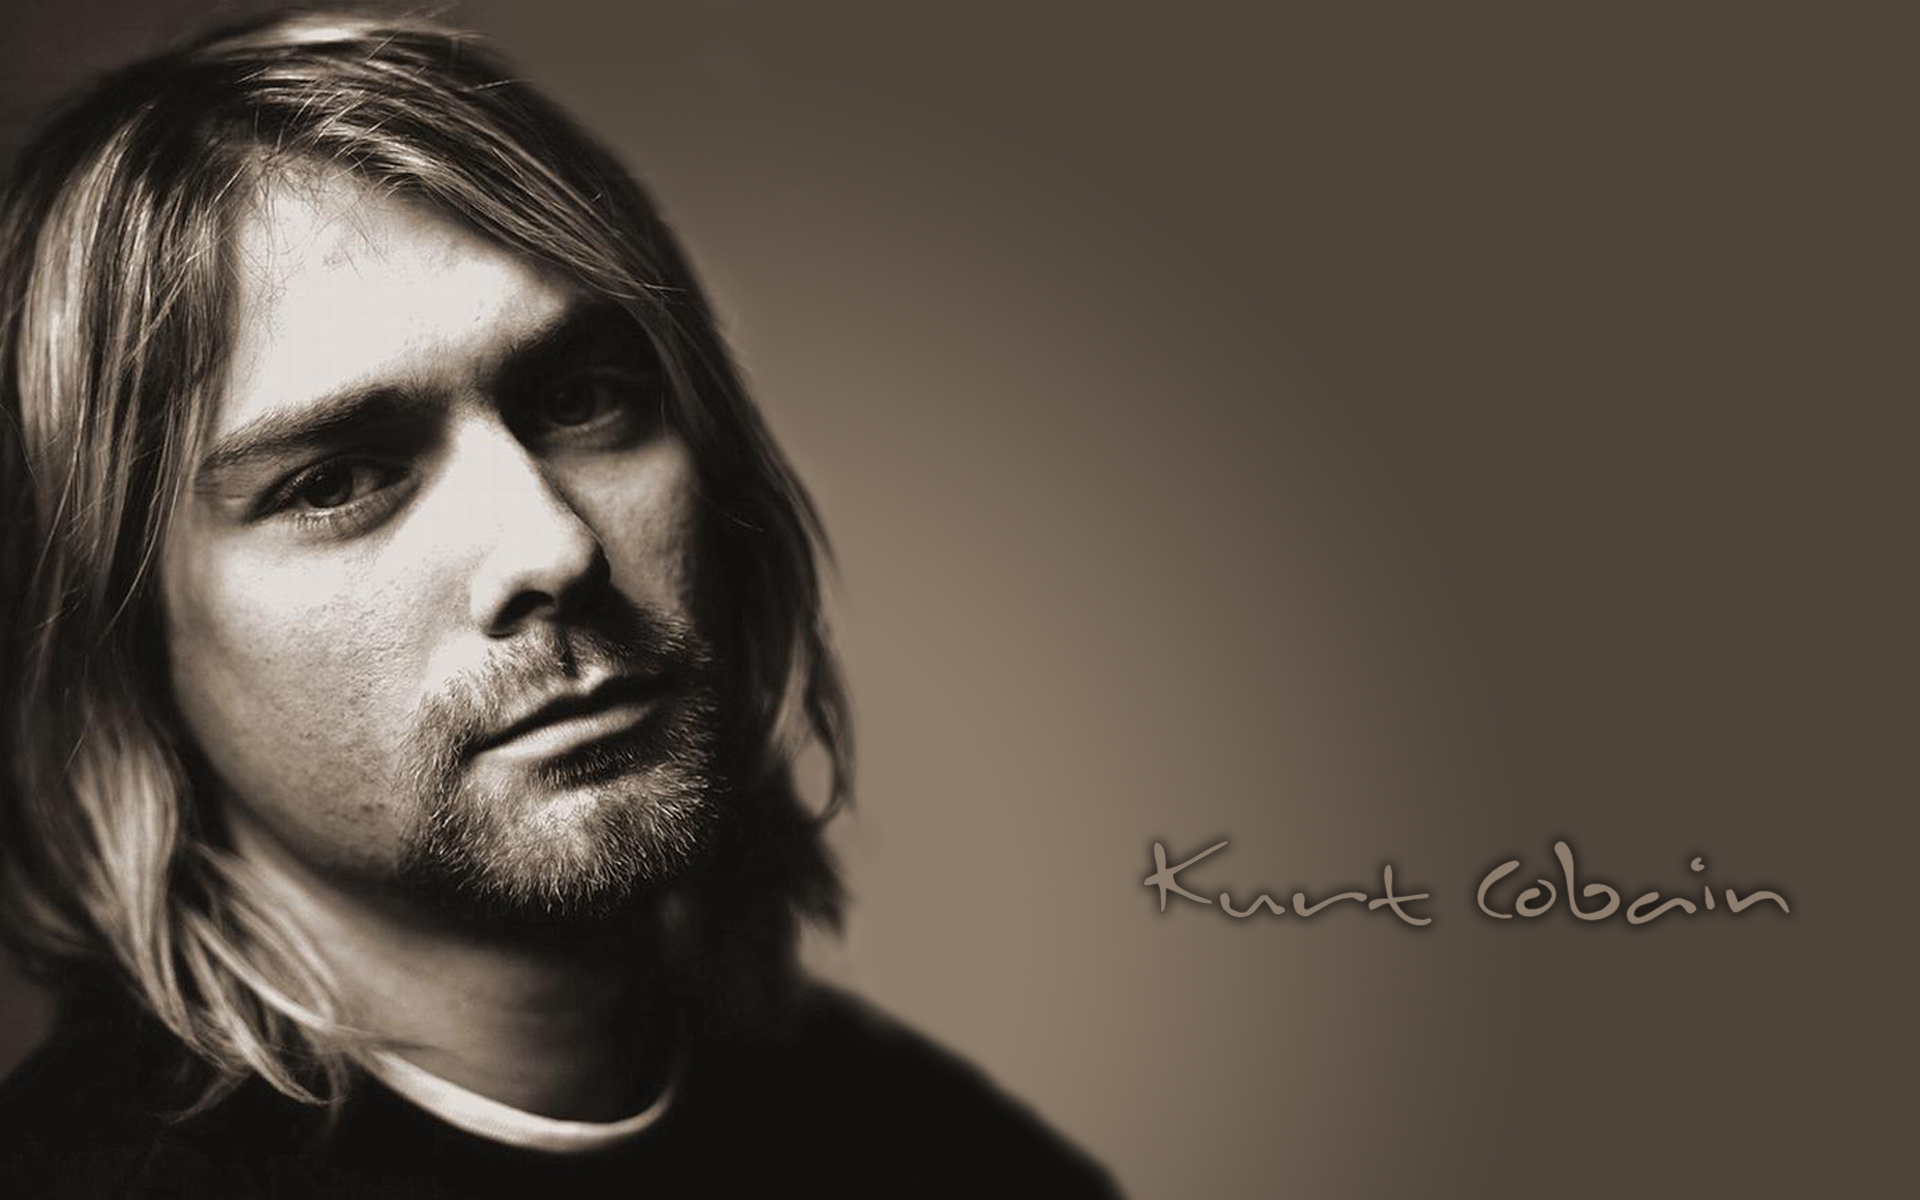 Kurt Donald Cobain February 20 1967 April 5 1994